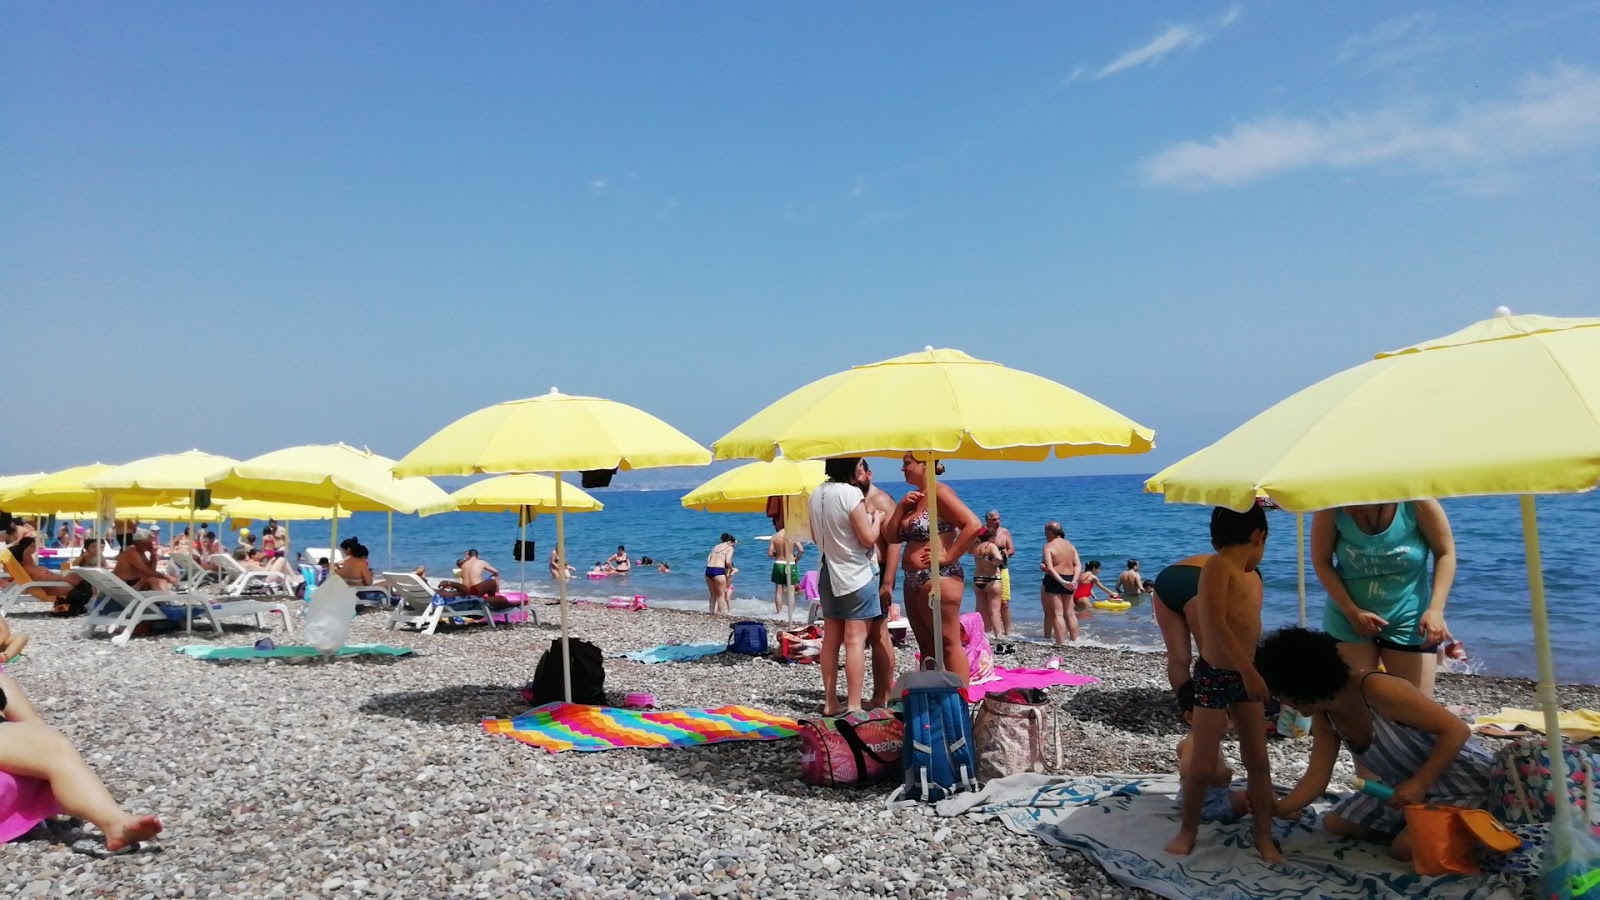 Lido Pagliacci'in fotoğrafı plaj tatil beldesi alanı